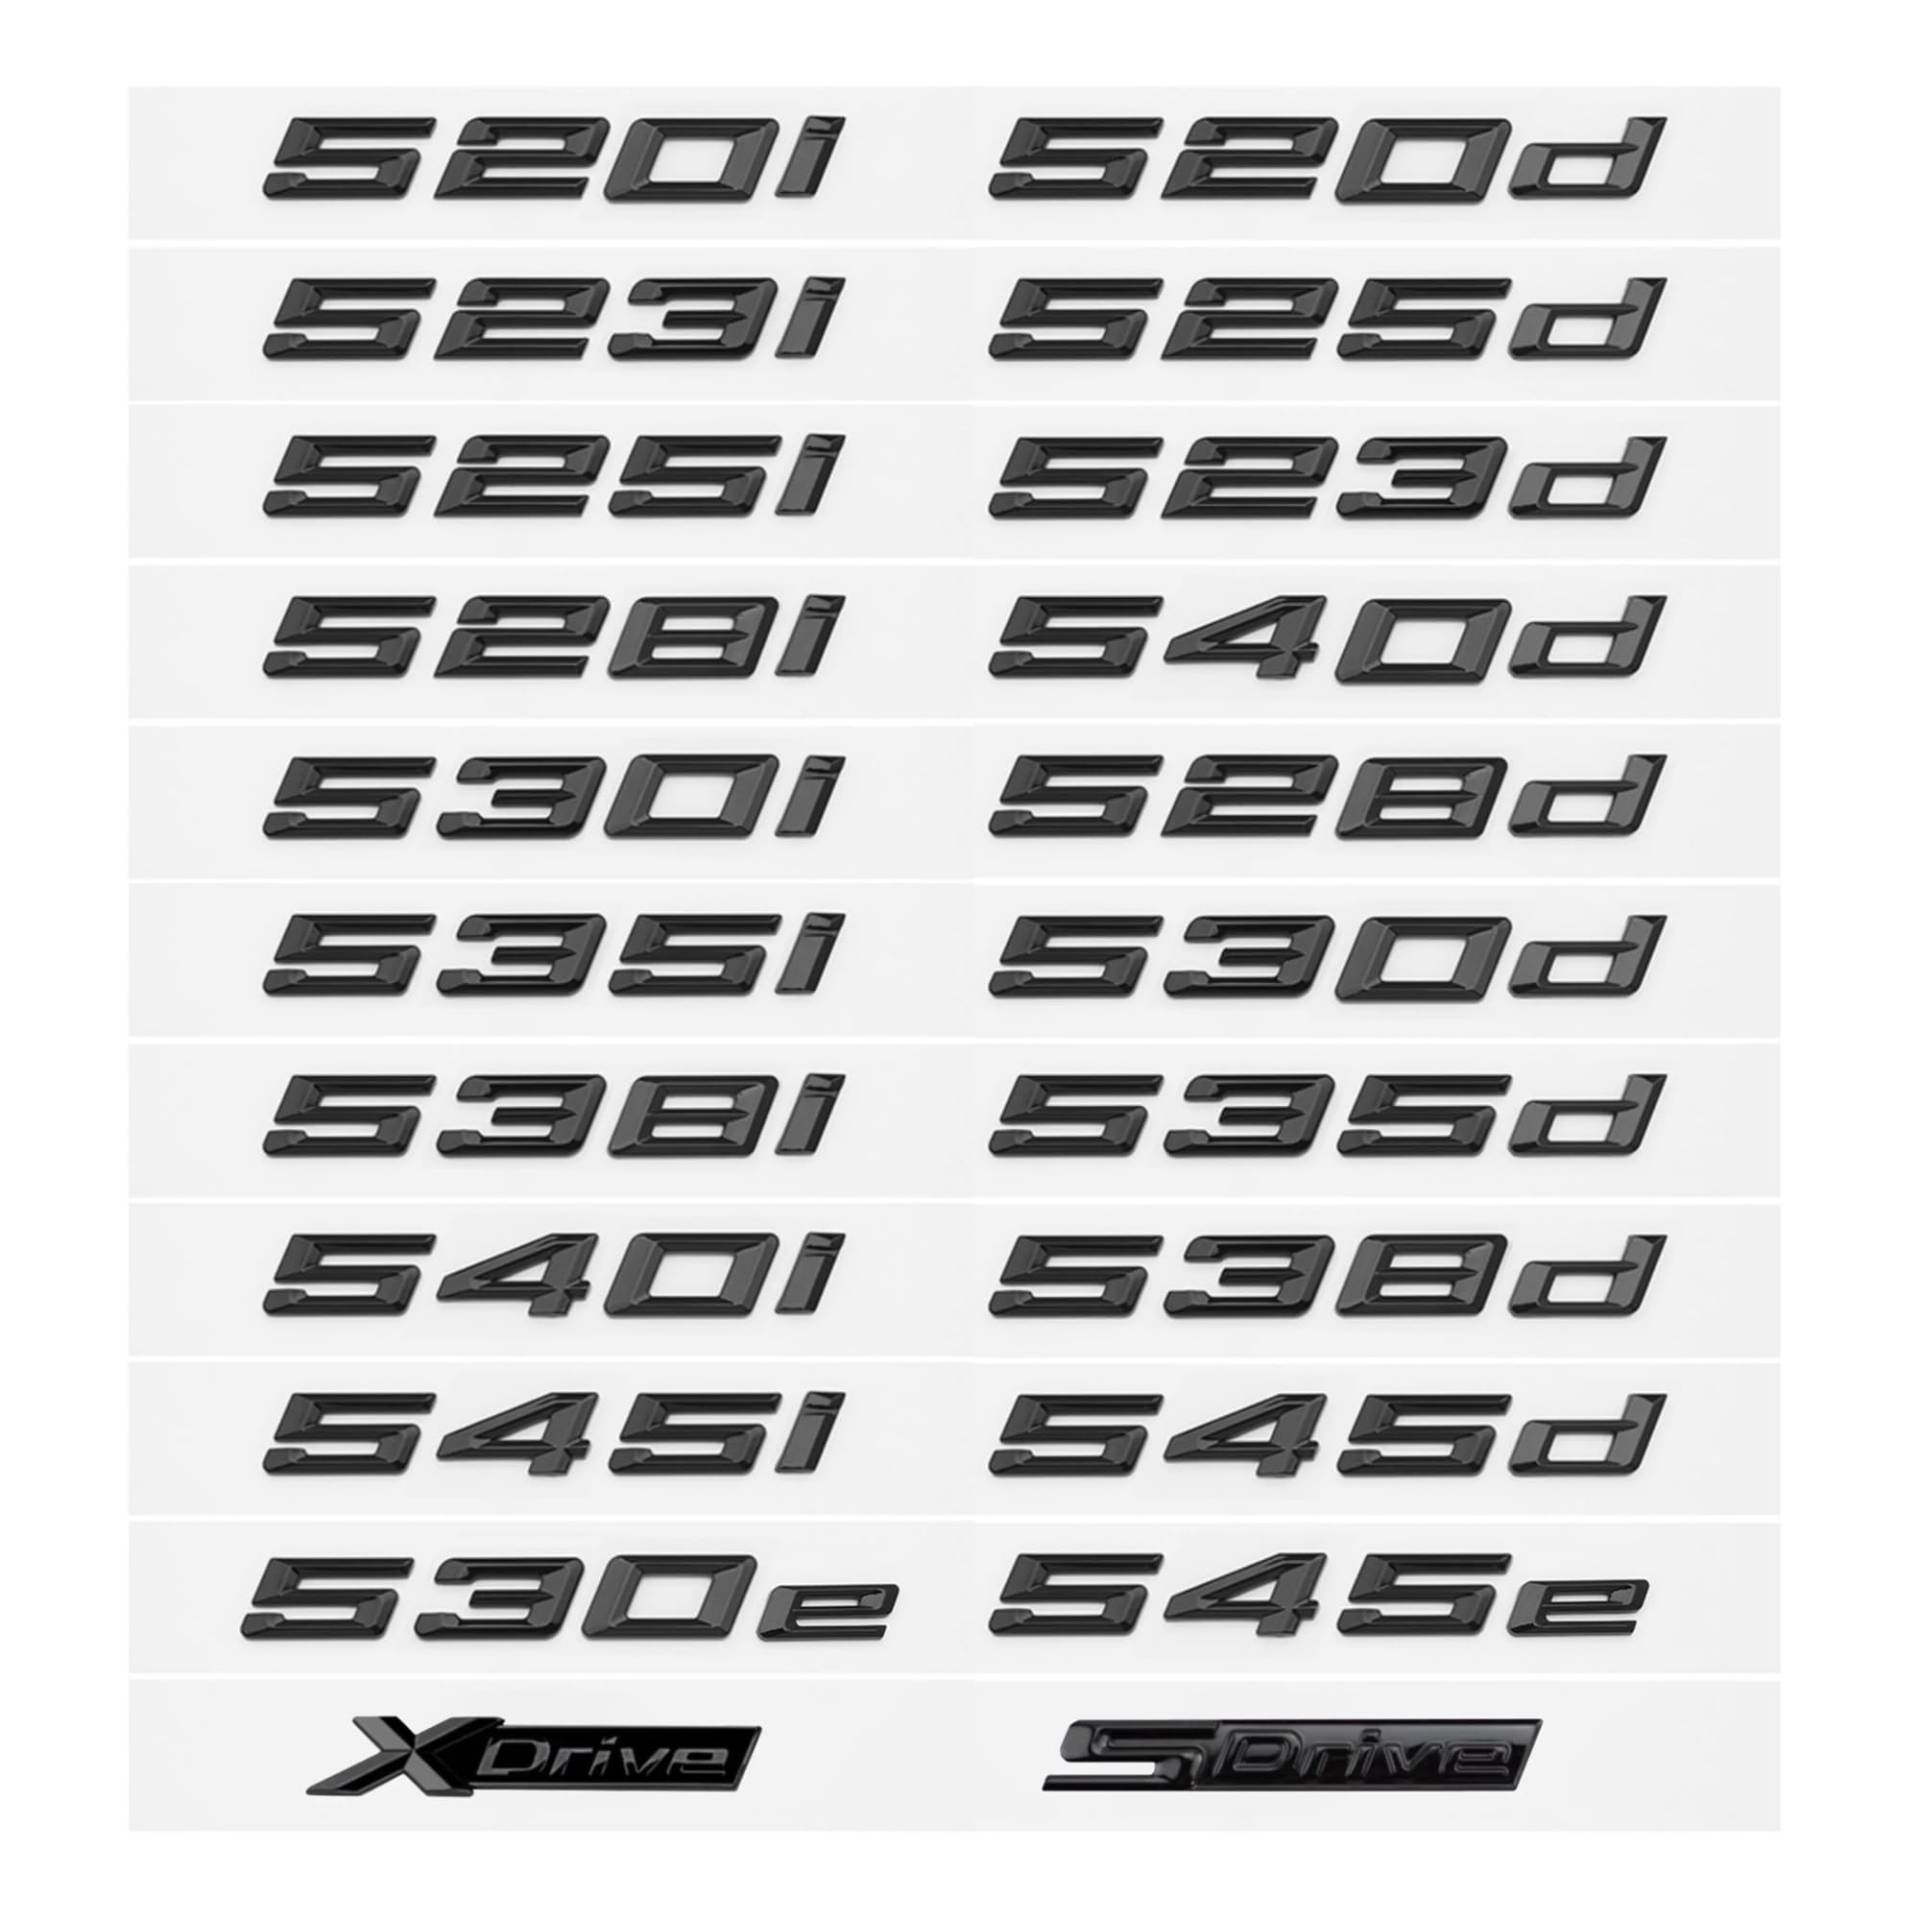 YSRWTBBA Glänzend schwarzes 520i 523i 525d 530d 530e 535d 540d 545e ABS-Emblem, kompatibel mit 5er-Serie E39 E60 E61 F10 F11 G30, Logo-Aufkleber for den Kofferraum, einfach abz von YSRWTBBA